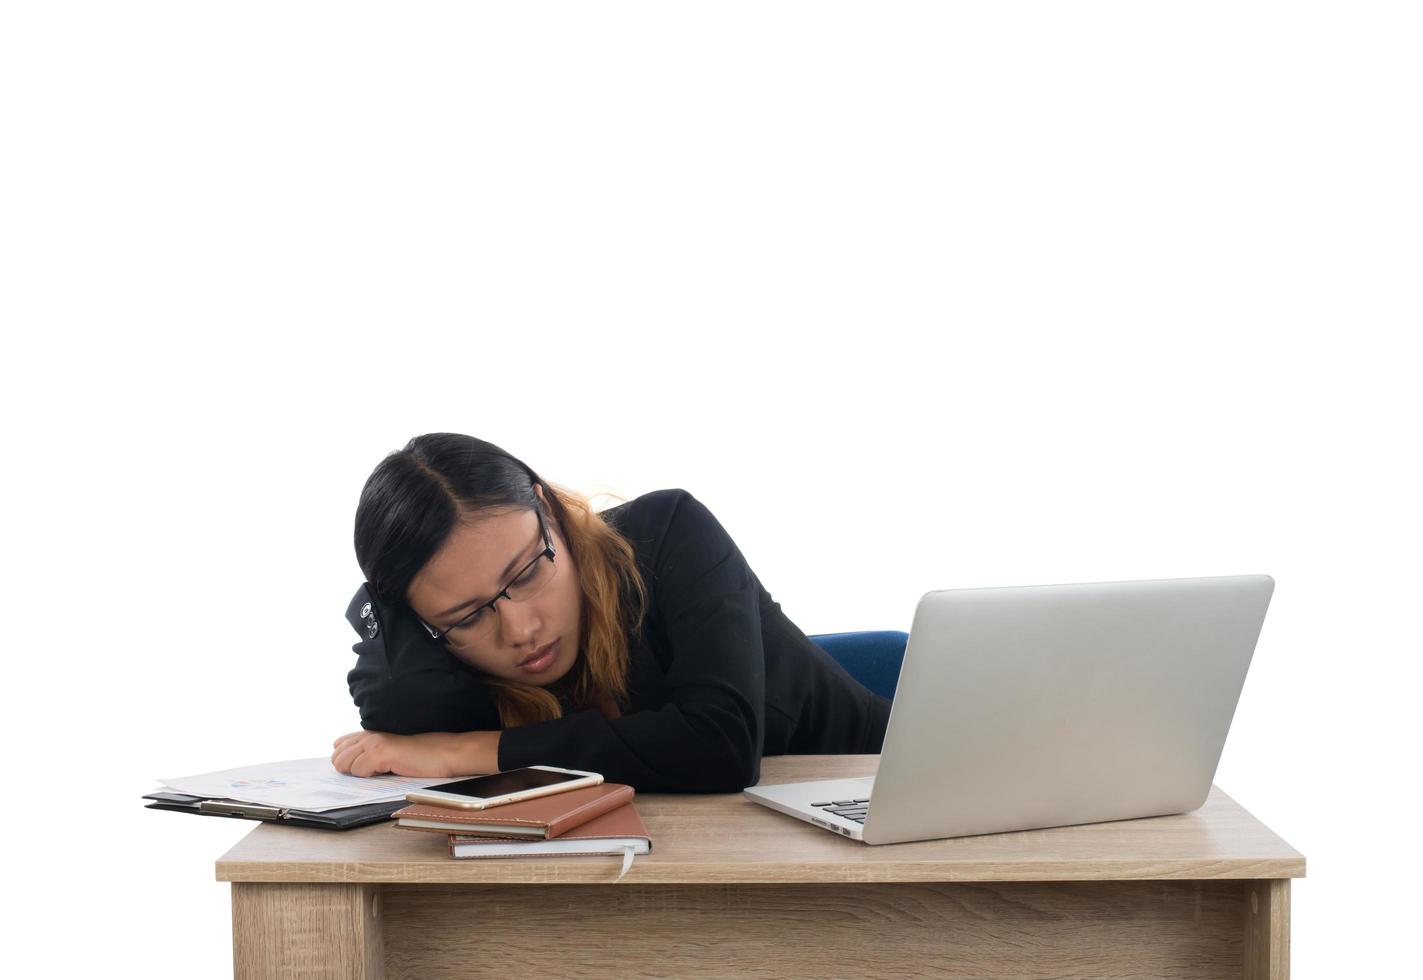 jonge zakenvrouw moe van haar werk in slaap vallen op haar bureau geïsoleerd op een witte achtergrond. foto